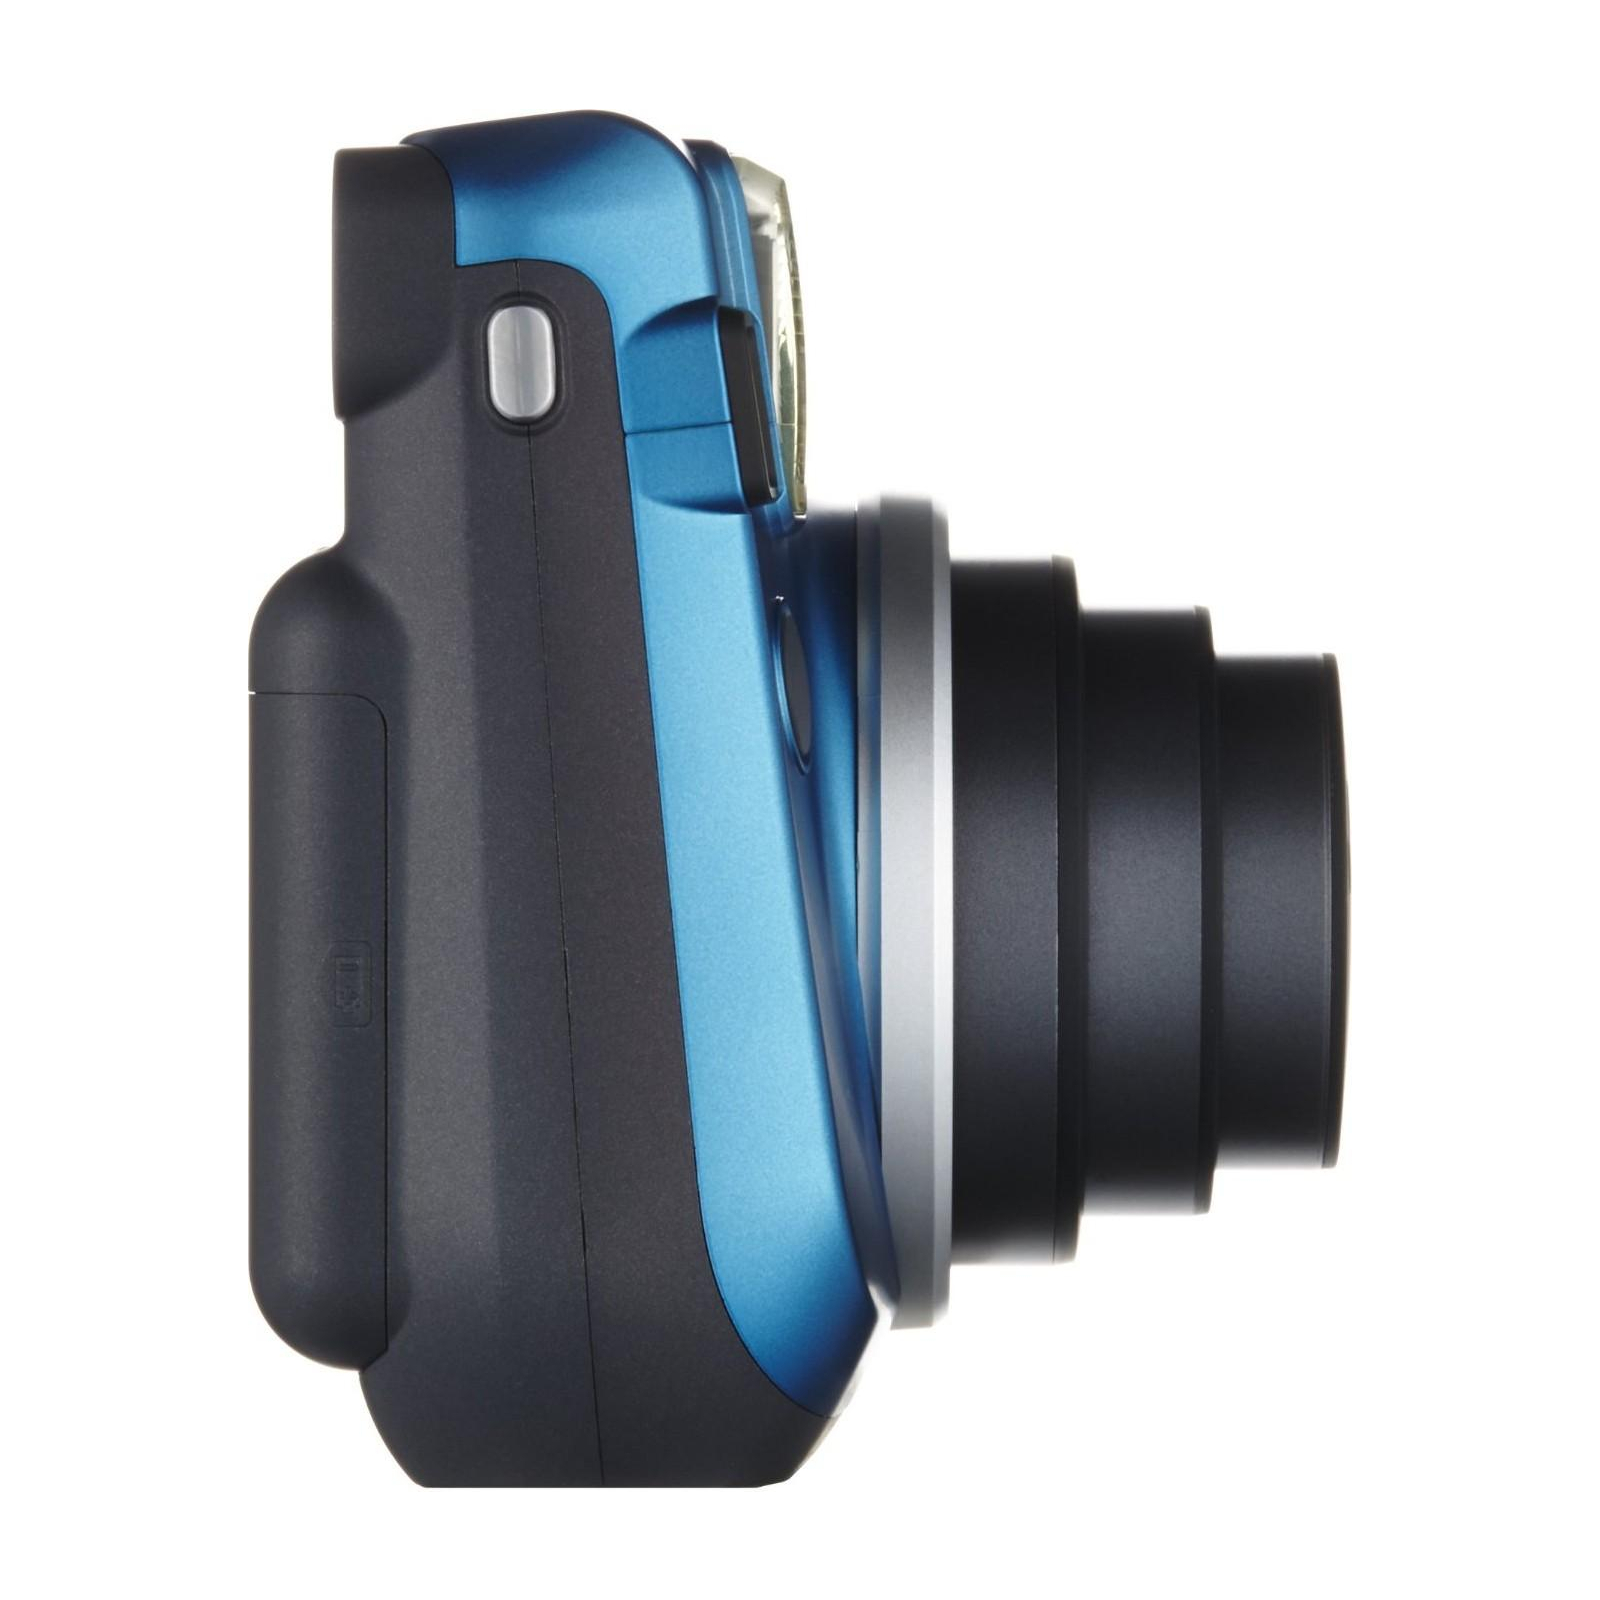 Камера моментальной печати Fujifilm Instax Mini 70 Blue EX D (16496079) изображение 3